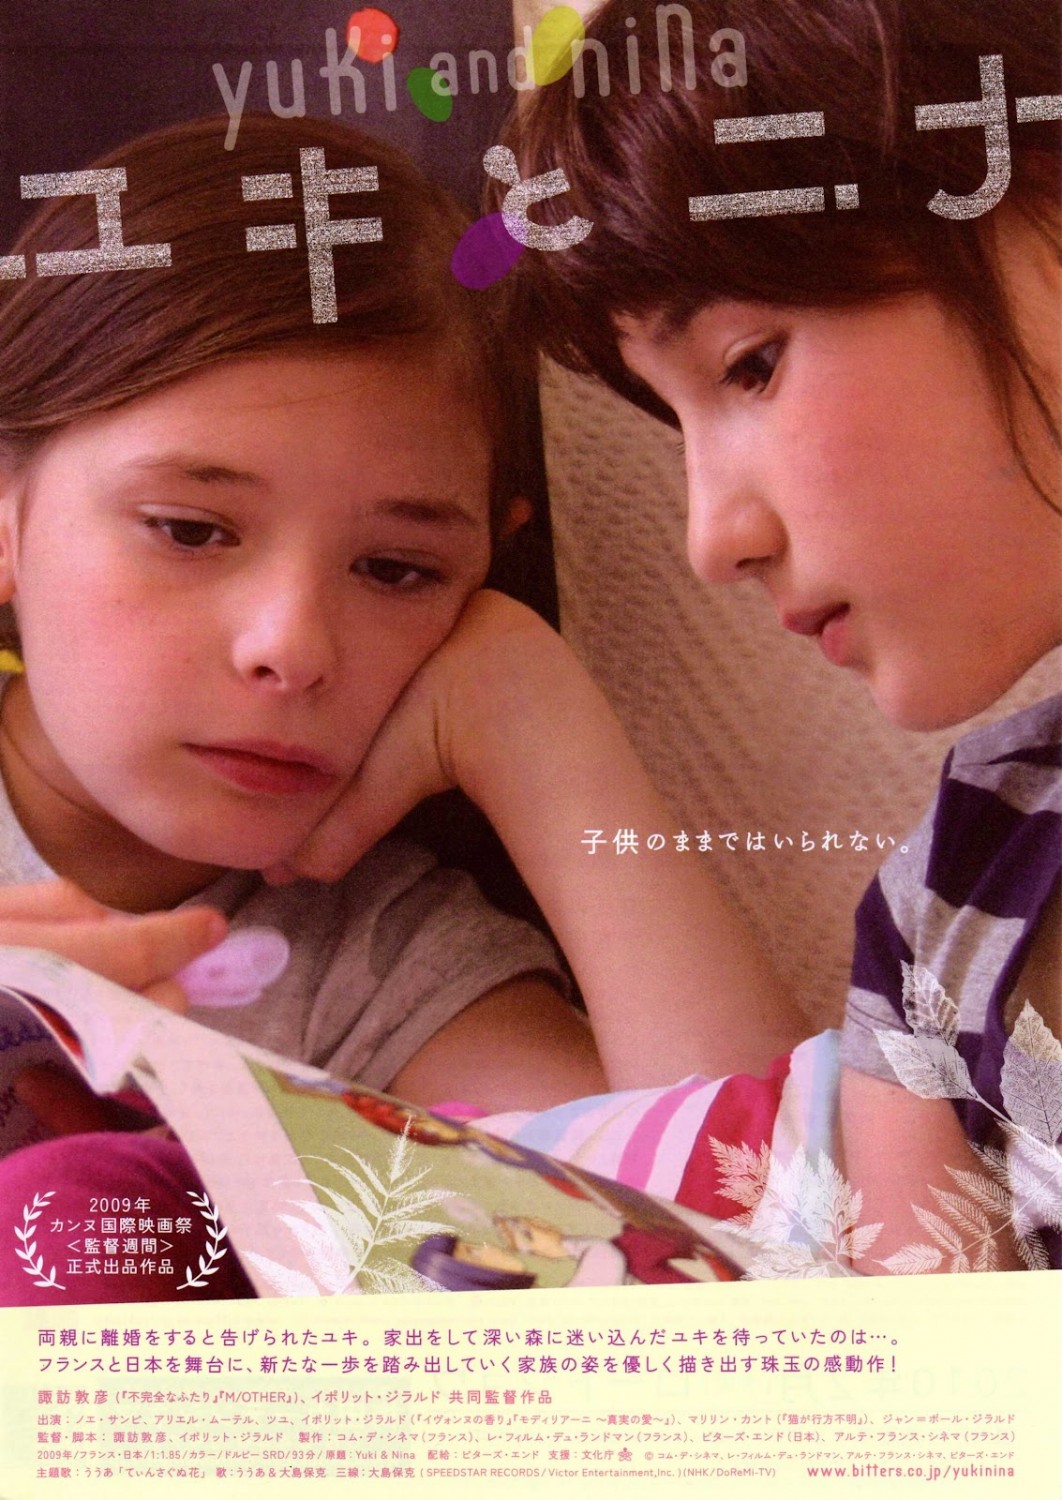 Extra Large Movie Poster Image for Yuki & Nina (#3 of 3)